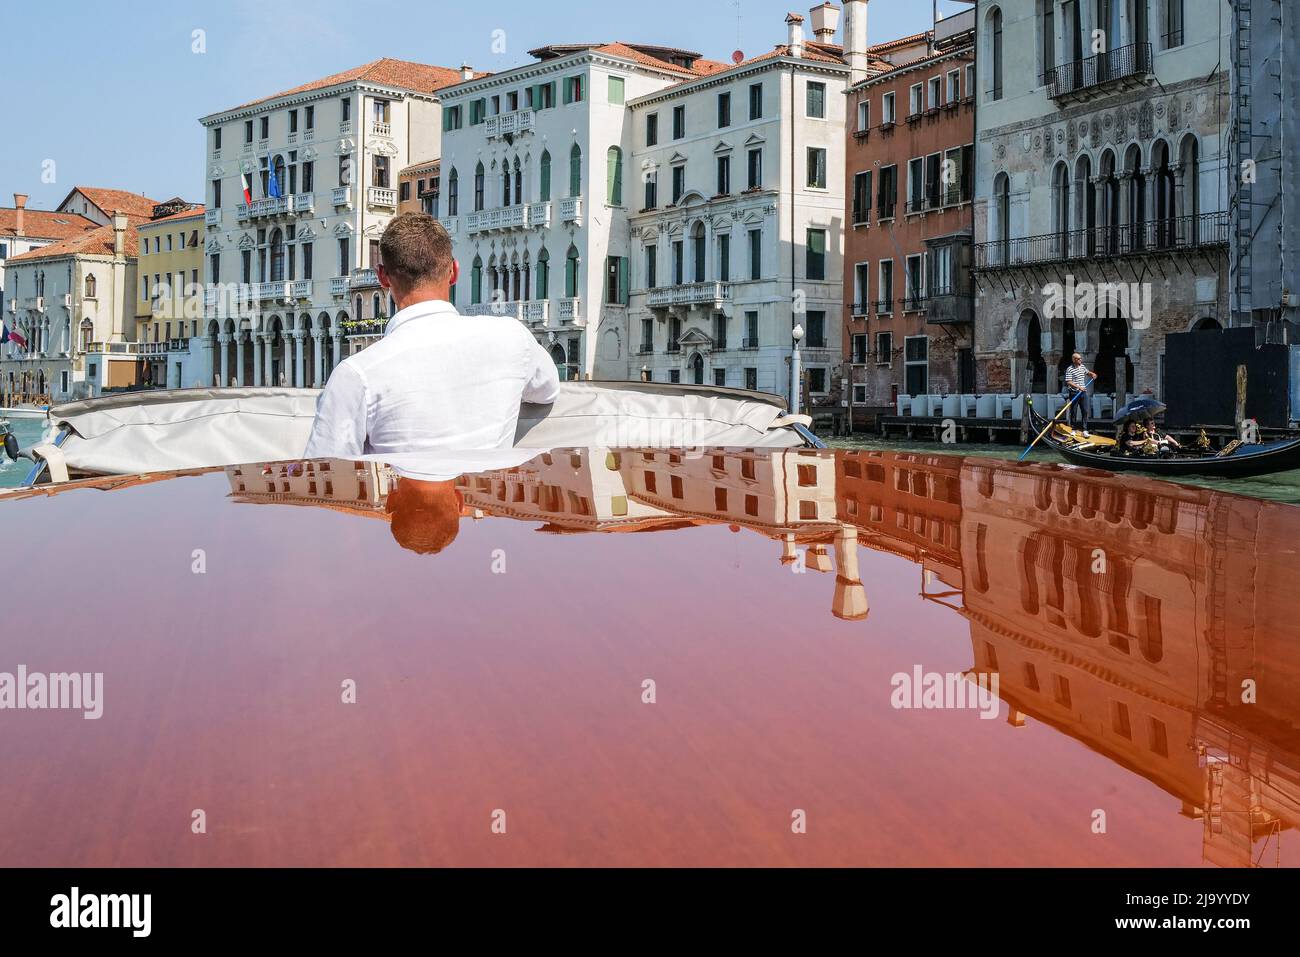 Venezianisches Wassertaxi, das Spiegelungen des Gebäudes am Canale Grande in Venedig zeigt Stockfoto